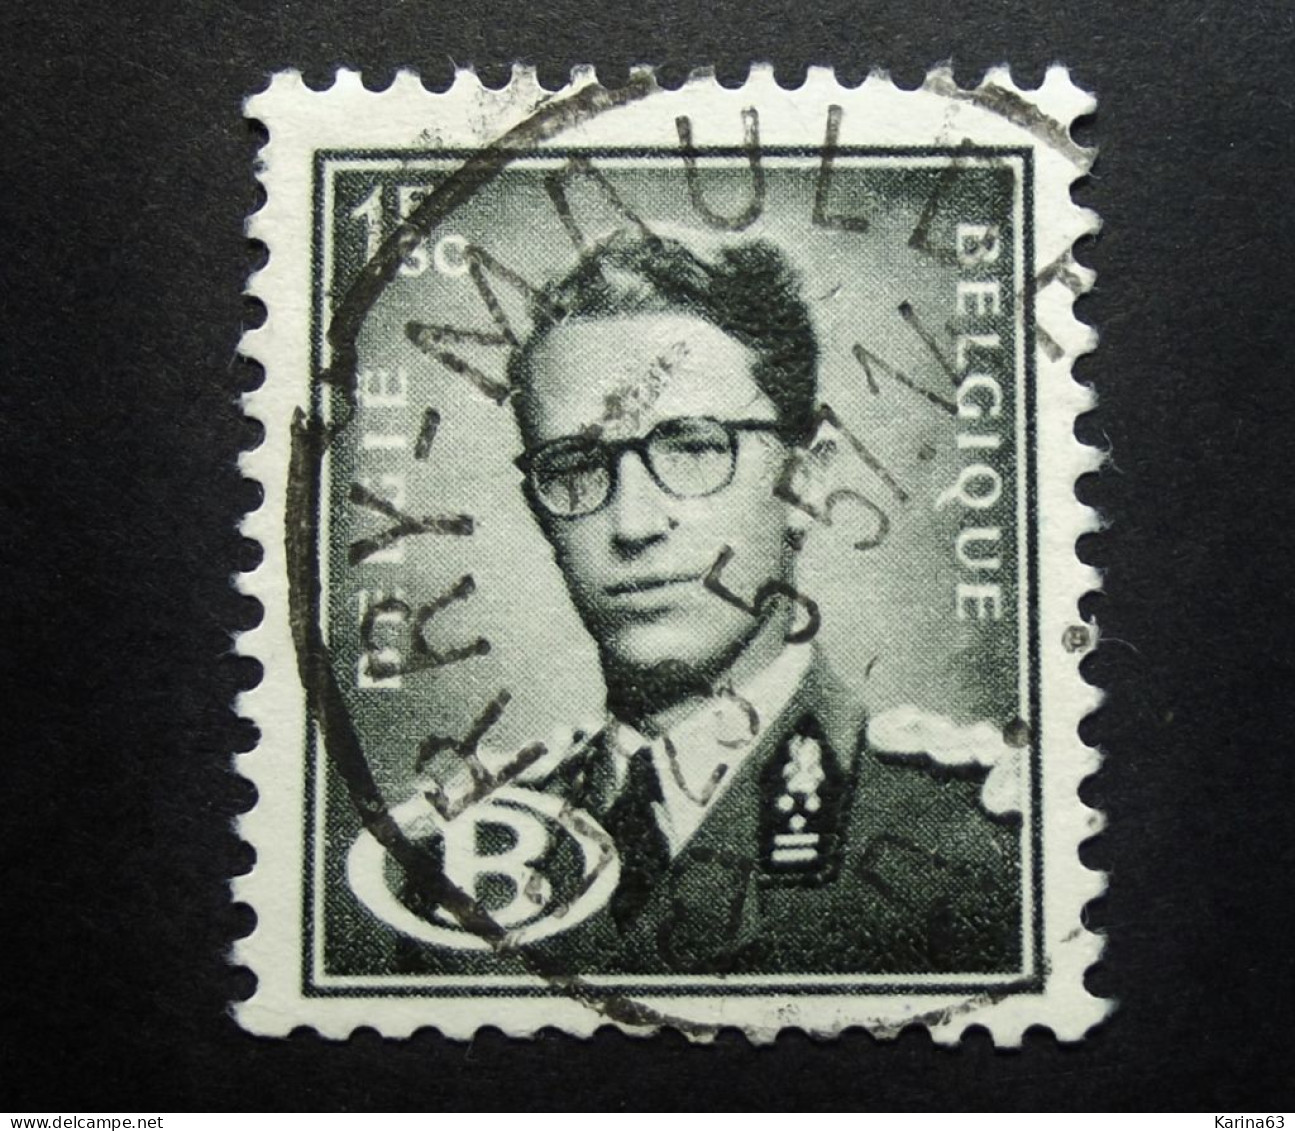 Belgie Belgique - 1954 -  OPB/COB  N° S 57 -  1F50   - Obl.  BARRY -  MAULDE - 1957 - Used Stamps